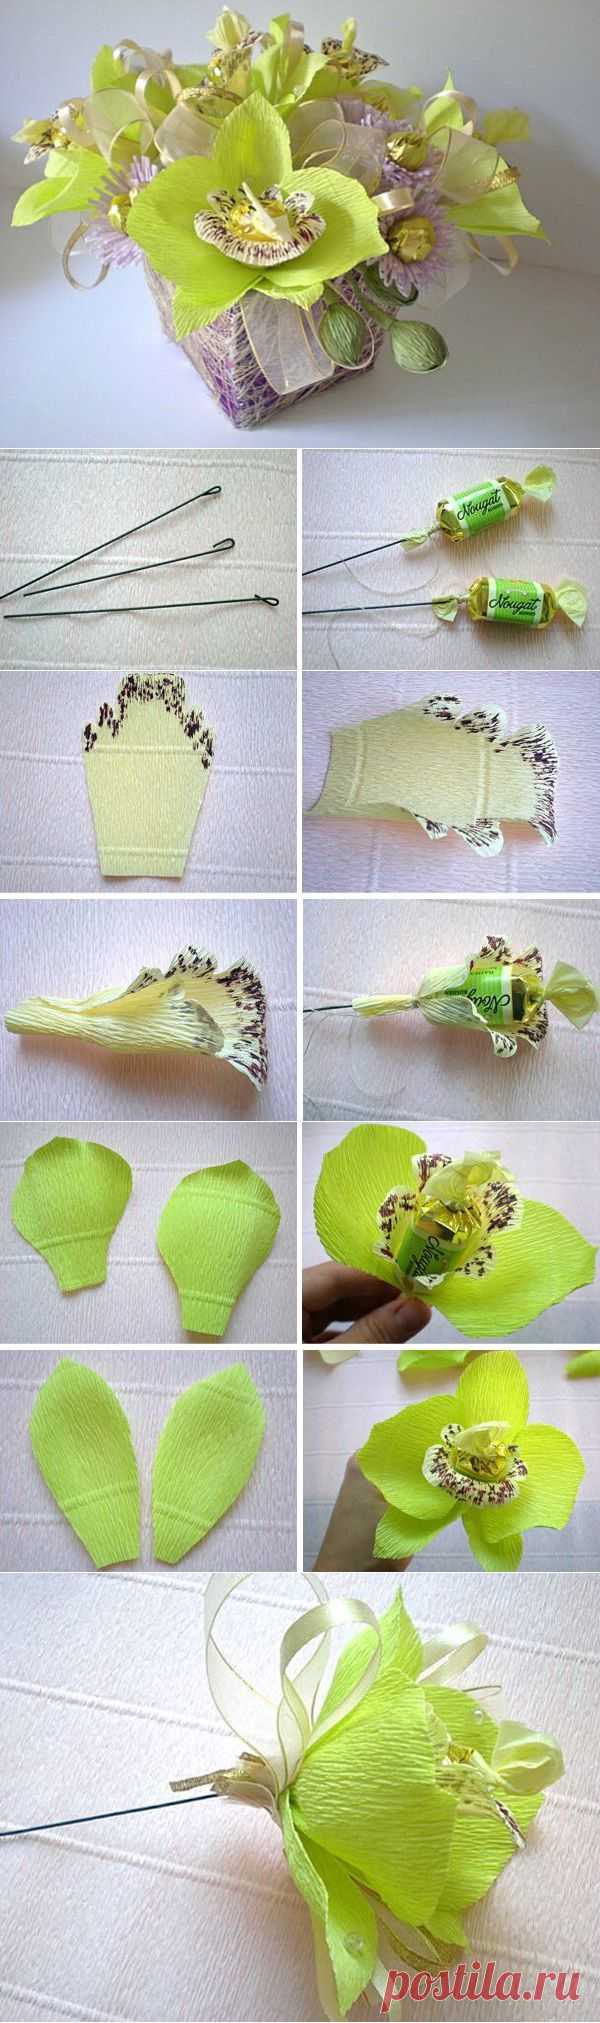 Букеты из конфет пошаговое фото Мастер класс Орхидея